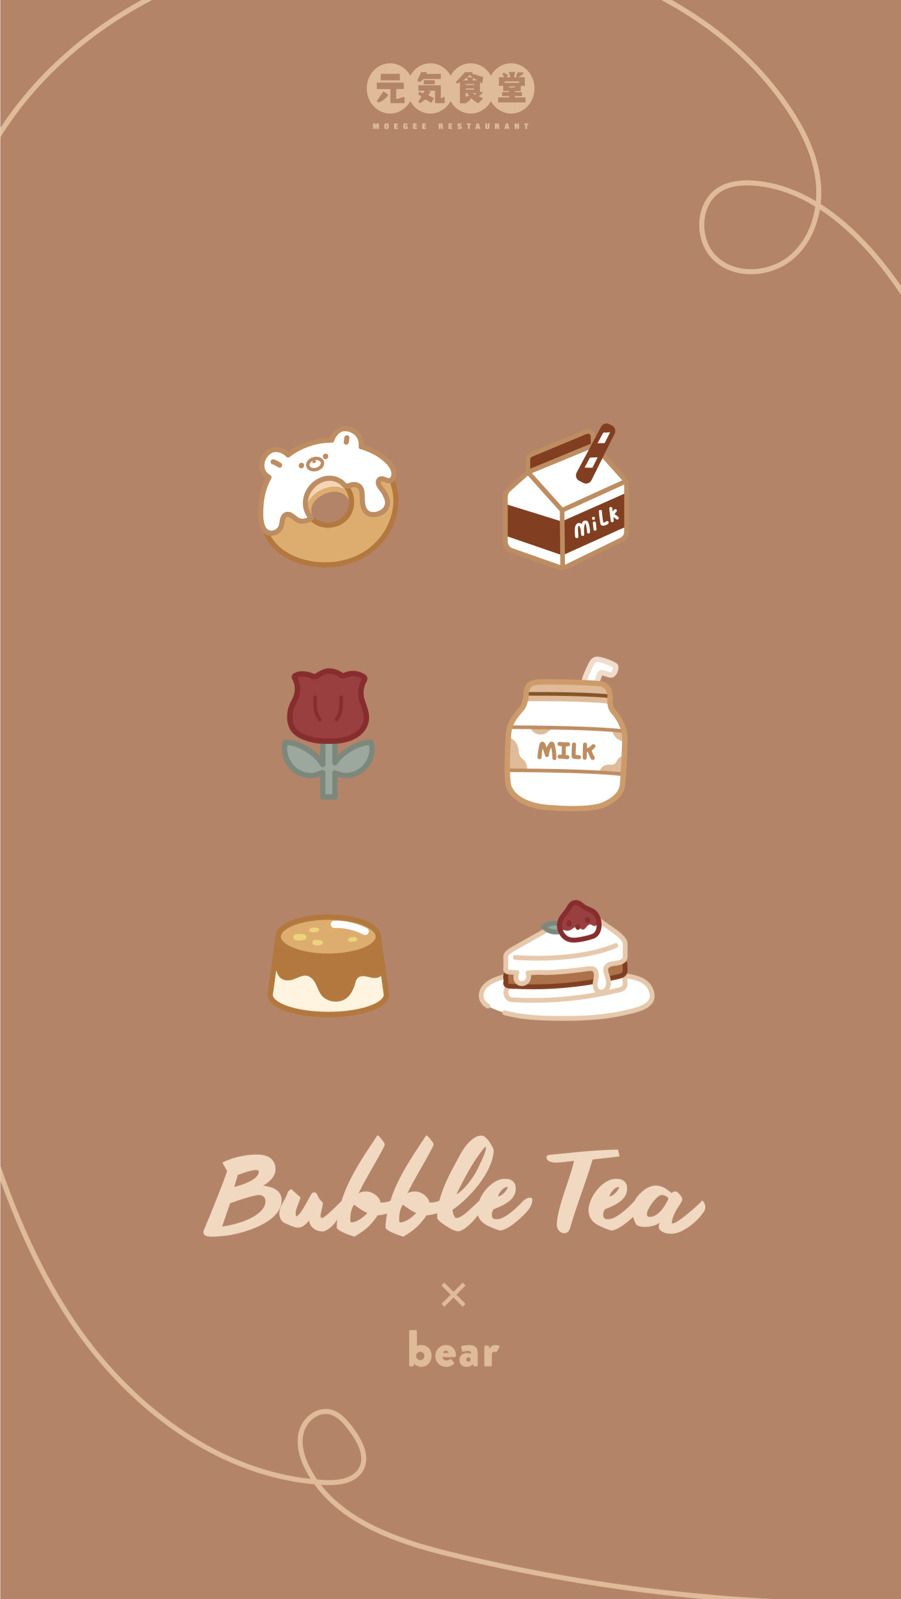 A poster for bubble tea bear - Boba